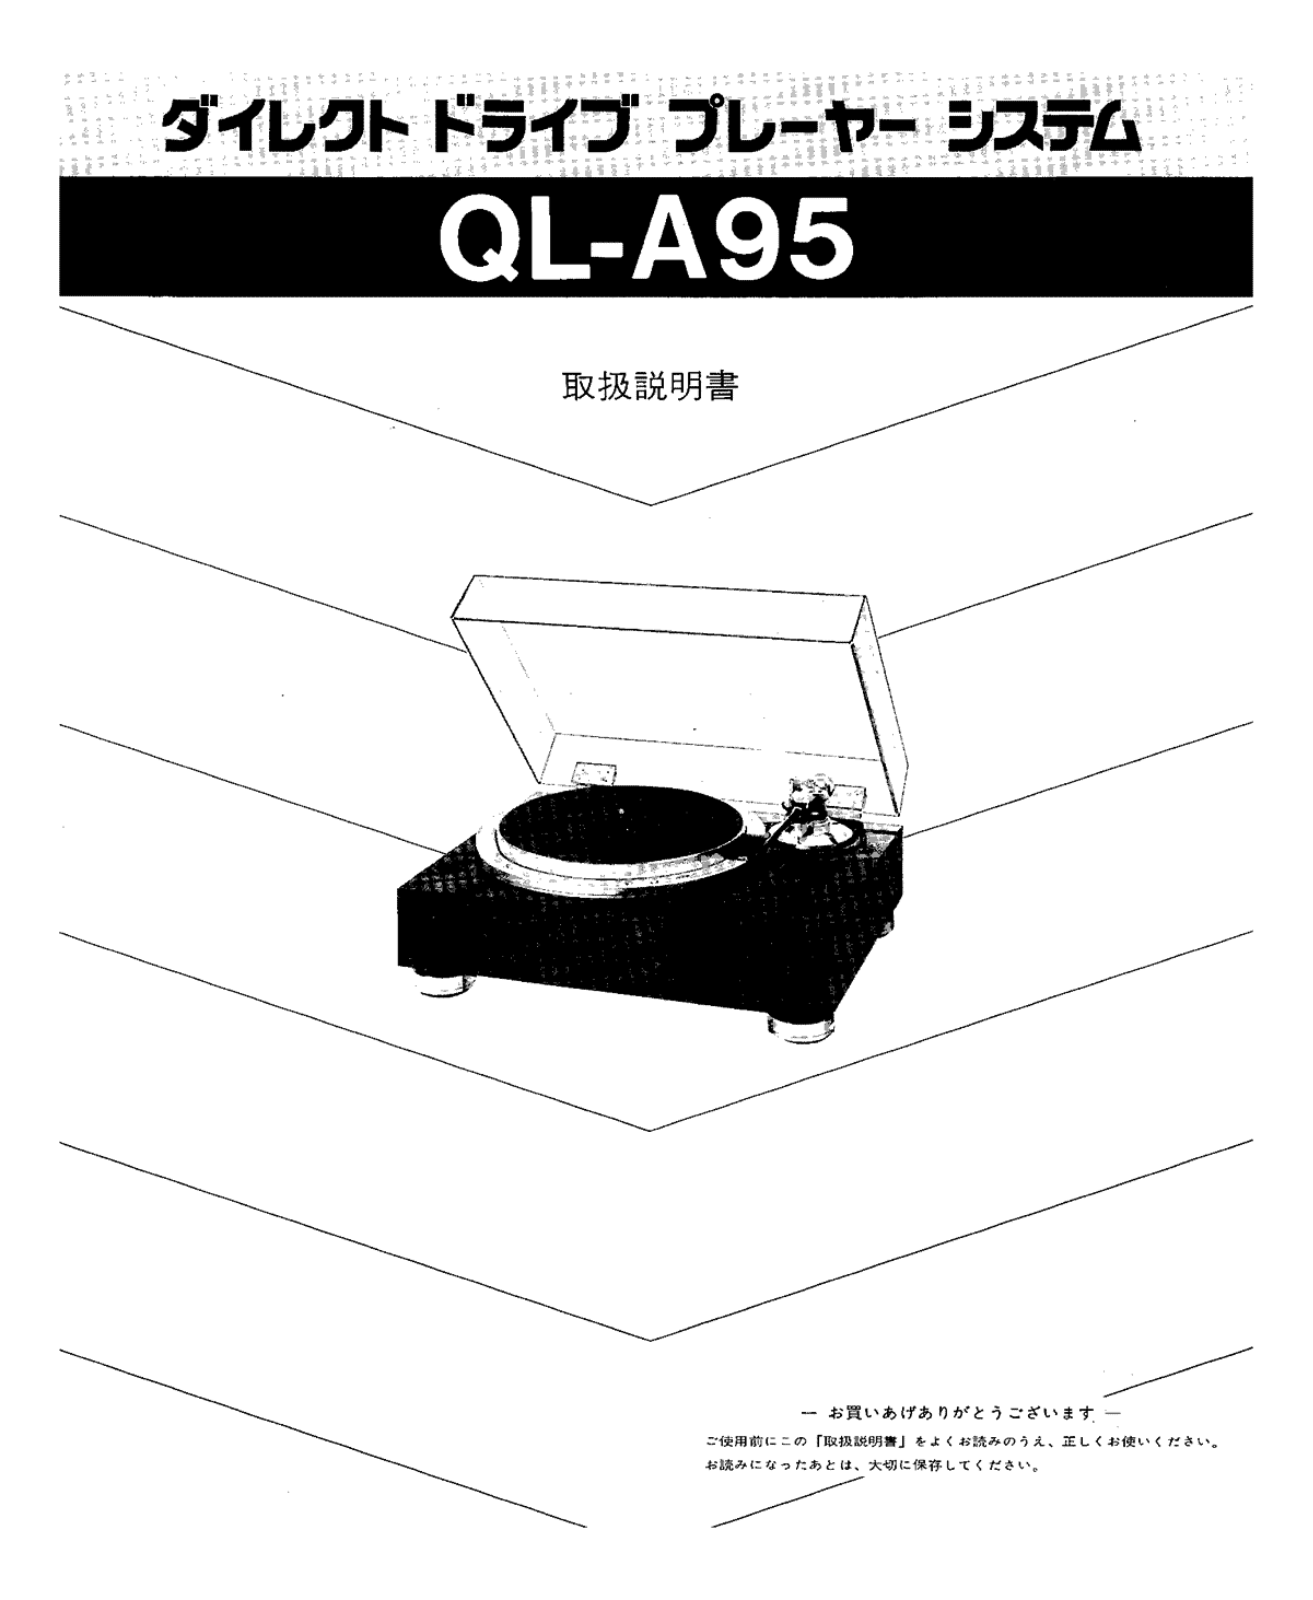 Jvc QL-A95 Owners Manual